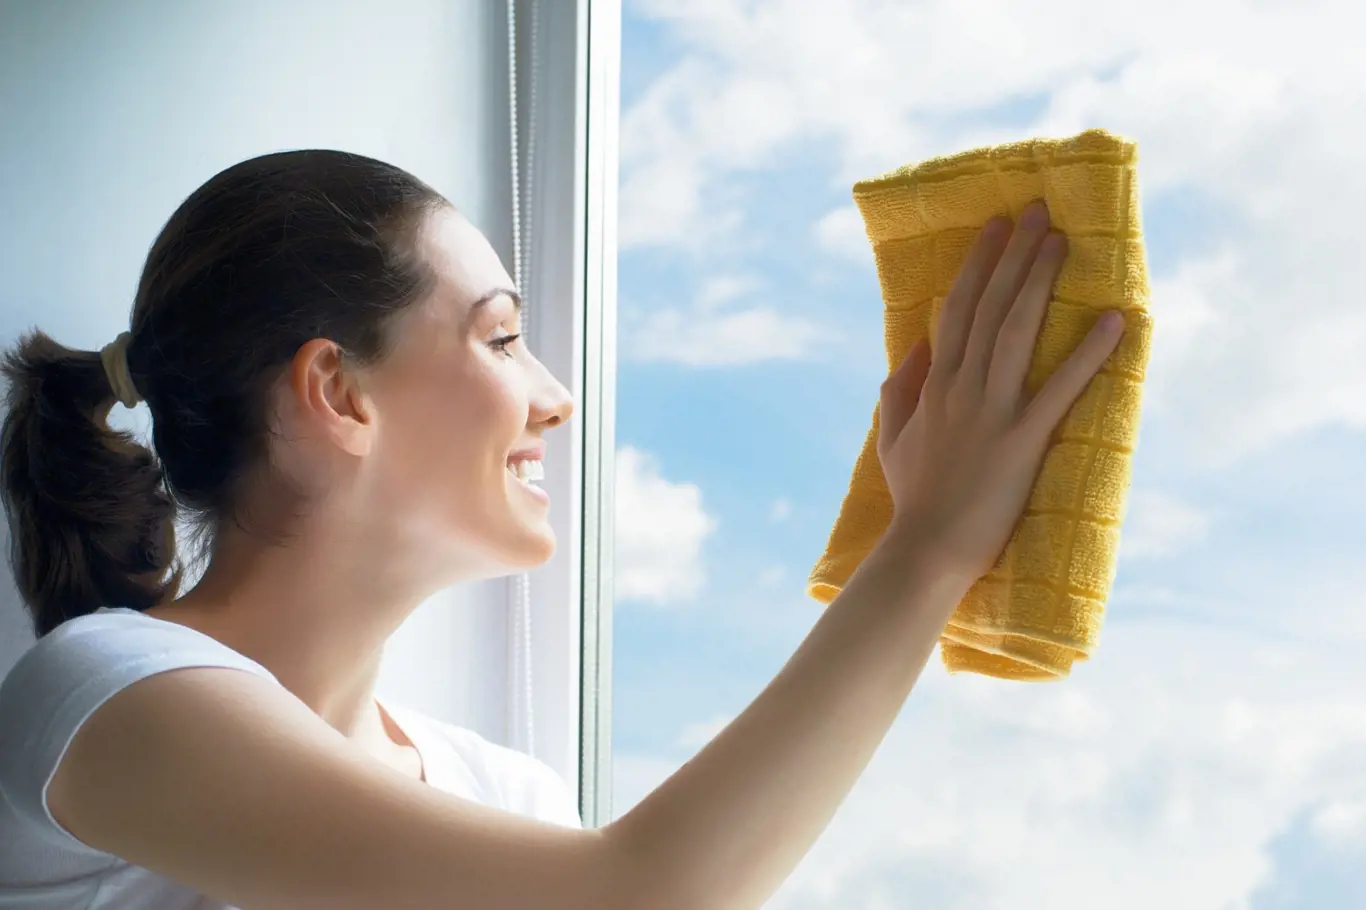 Důležité je zvolit si na mytí oken vhodný čas. Podívejte se proto nejprve na oblohu.